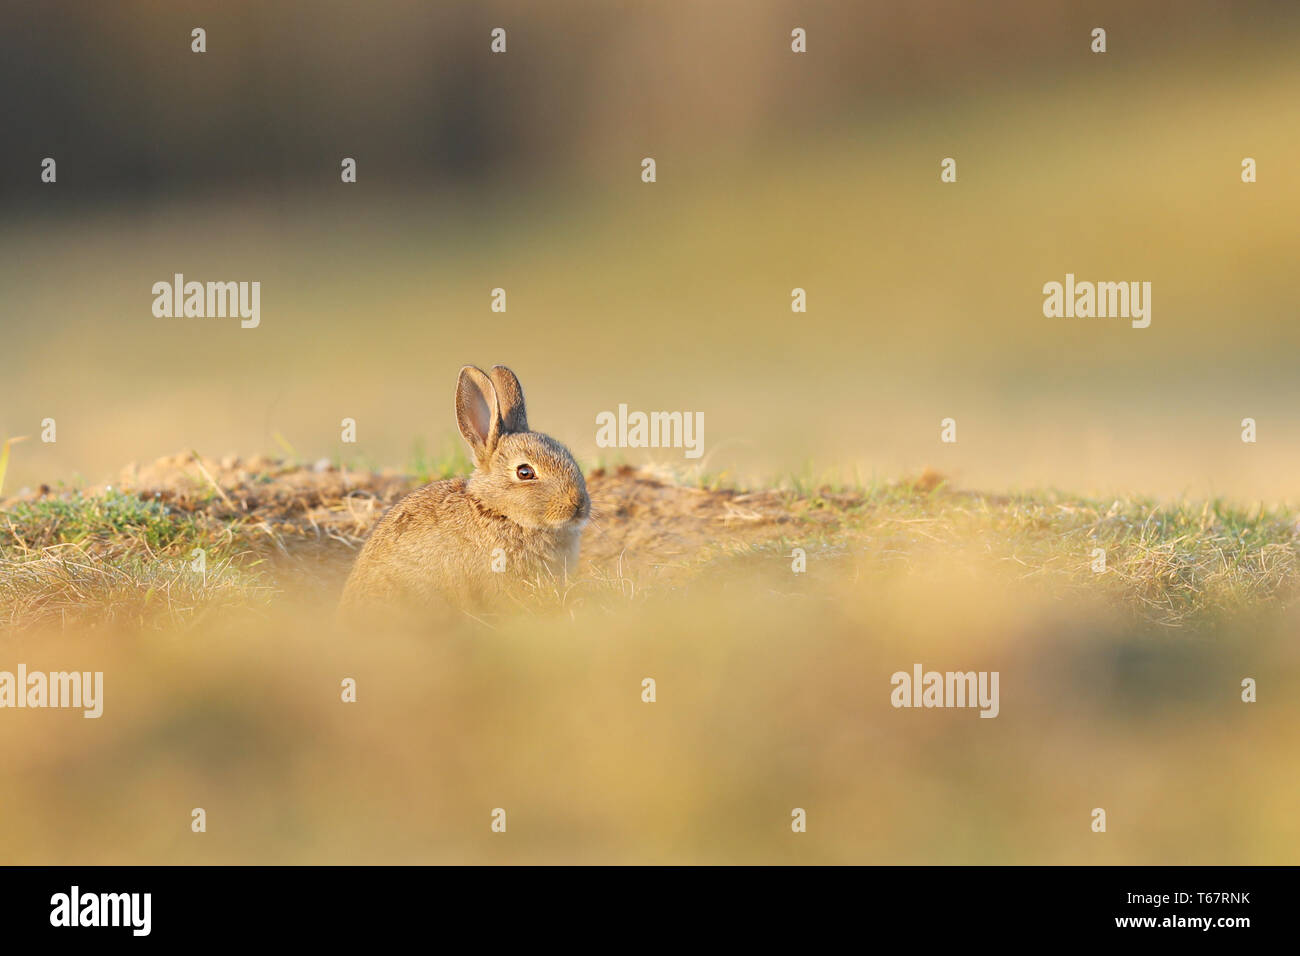 Animale in natura habitat, la vita nel prato. Unione di coniglio o di lepre comune, oryctolagus cuniculus, nascosto nell'erba. Foto Stock